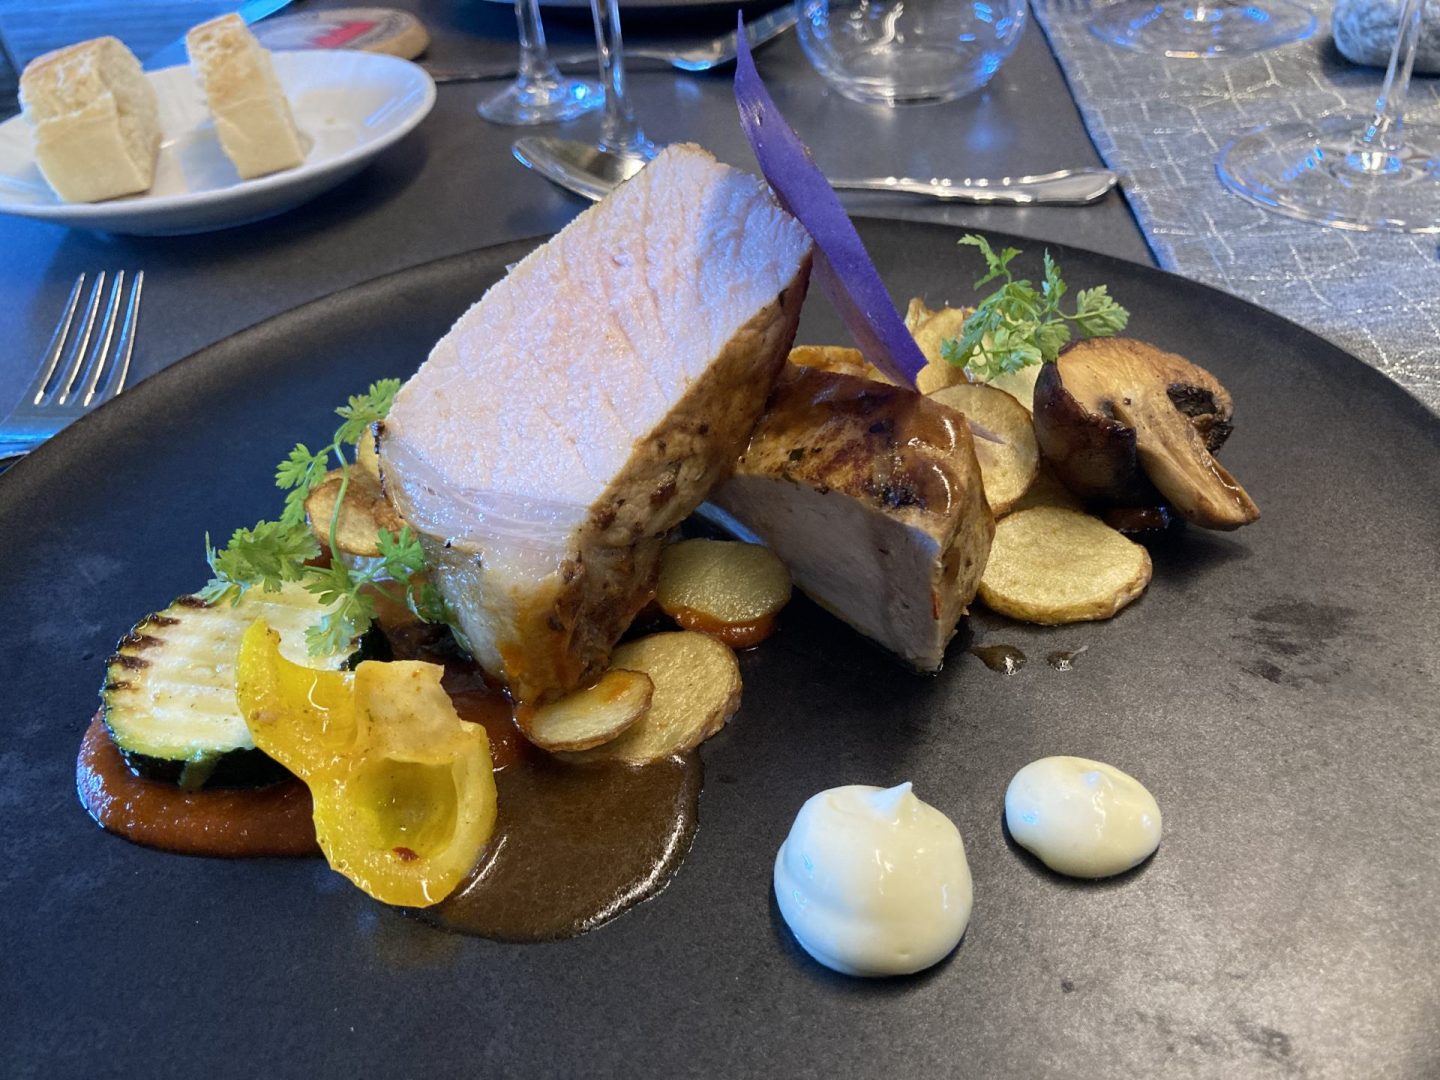 Erfahrung Bewertung Kritik Post Hotel See in Paznaun Steak vom Dry Aged Schwein Chorizo-Creme Aioli Foodblog Sternestulle